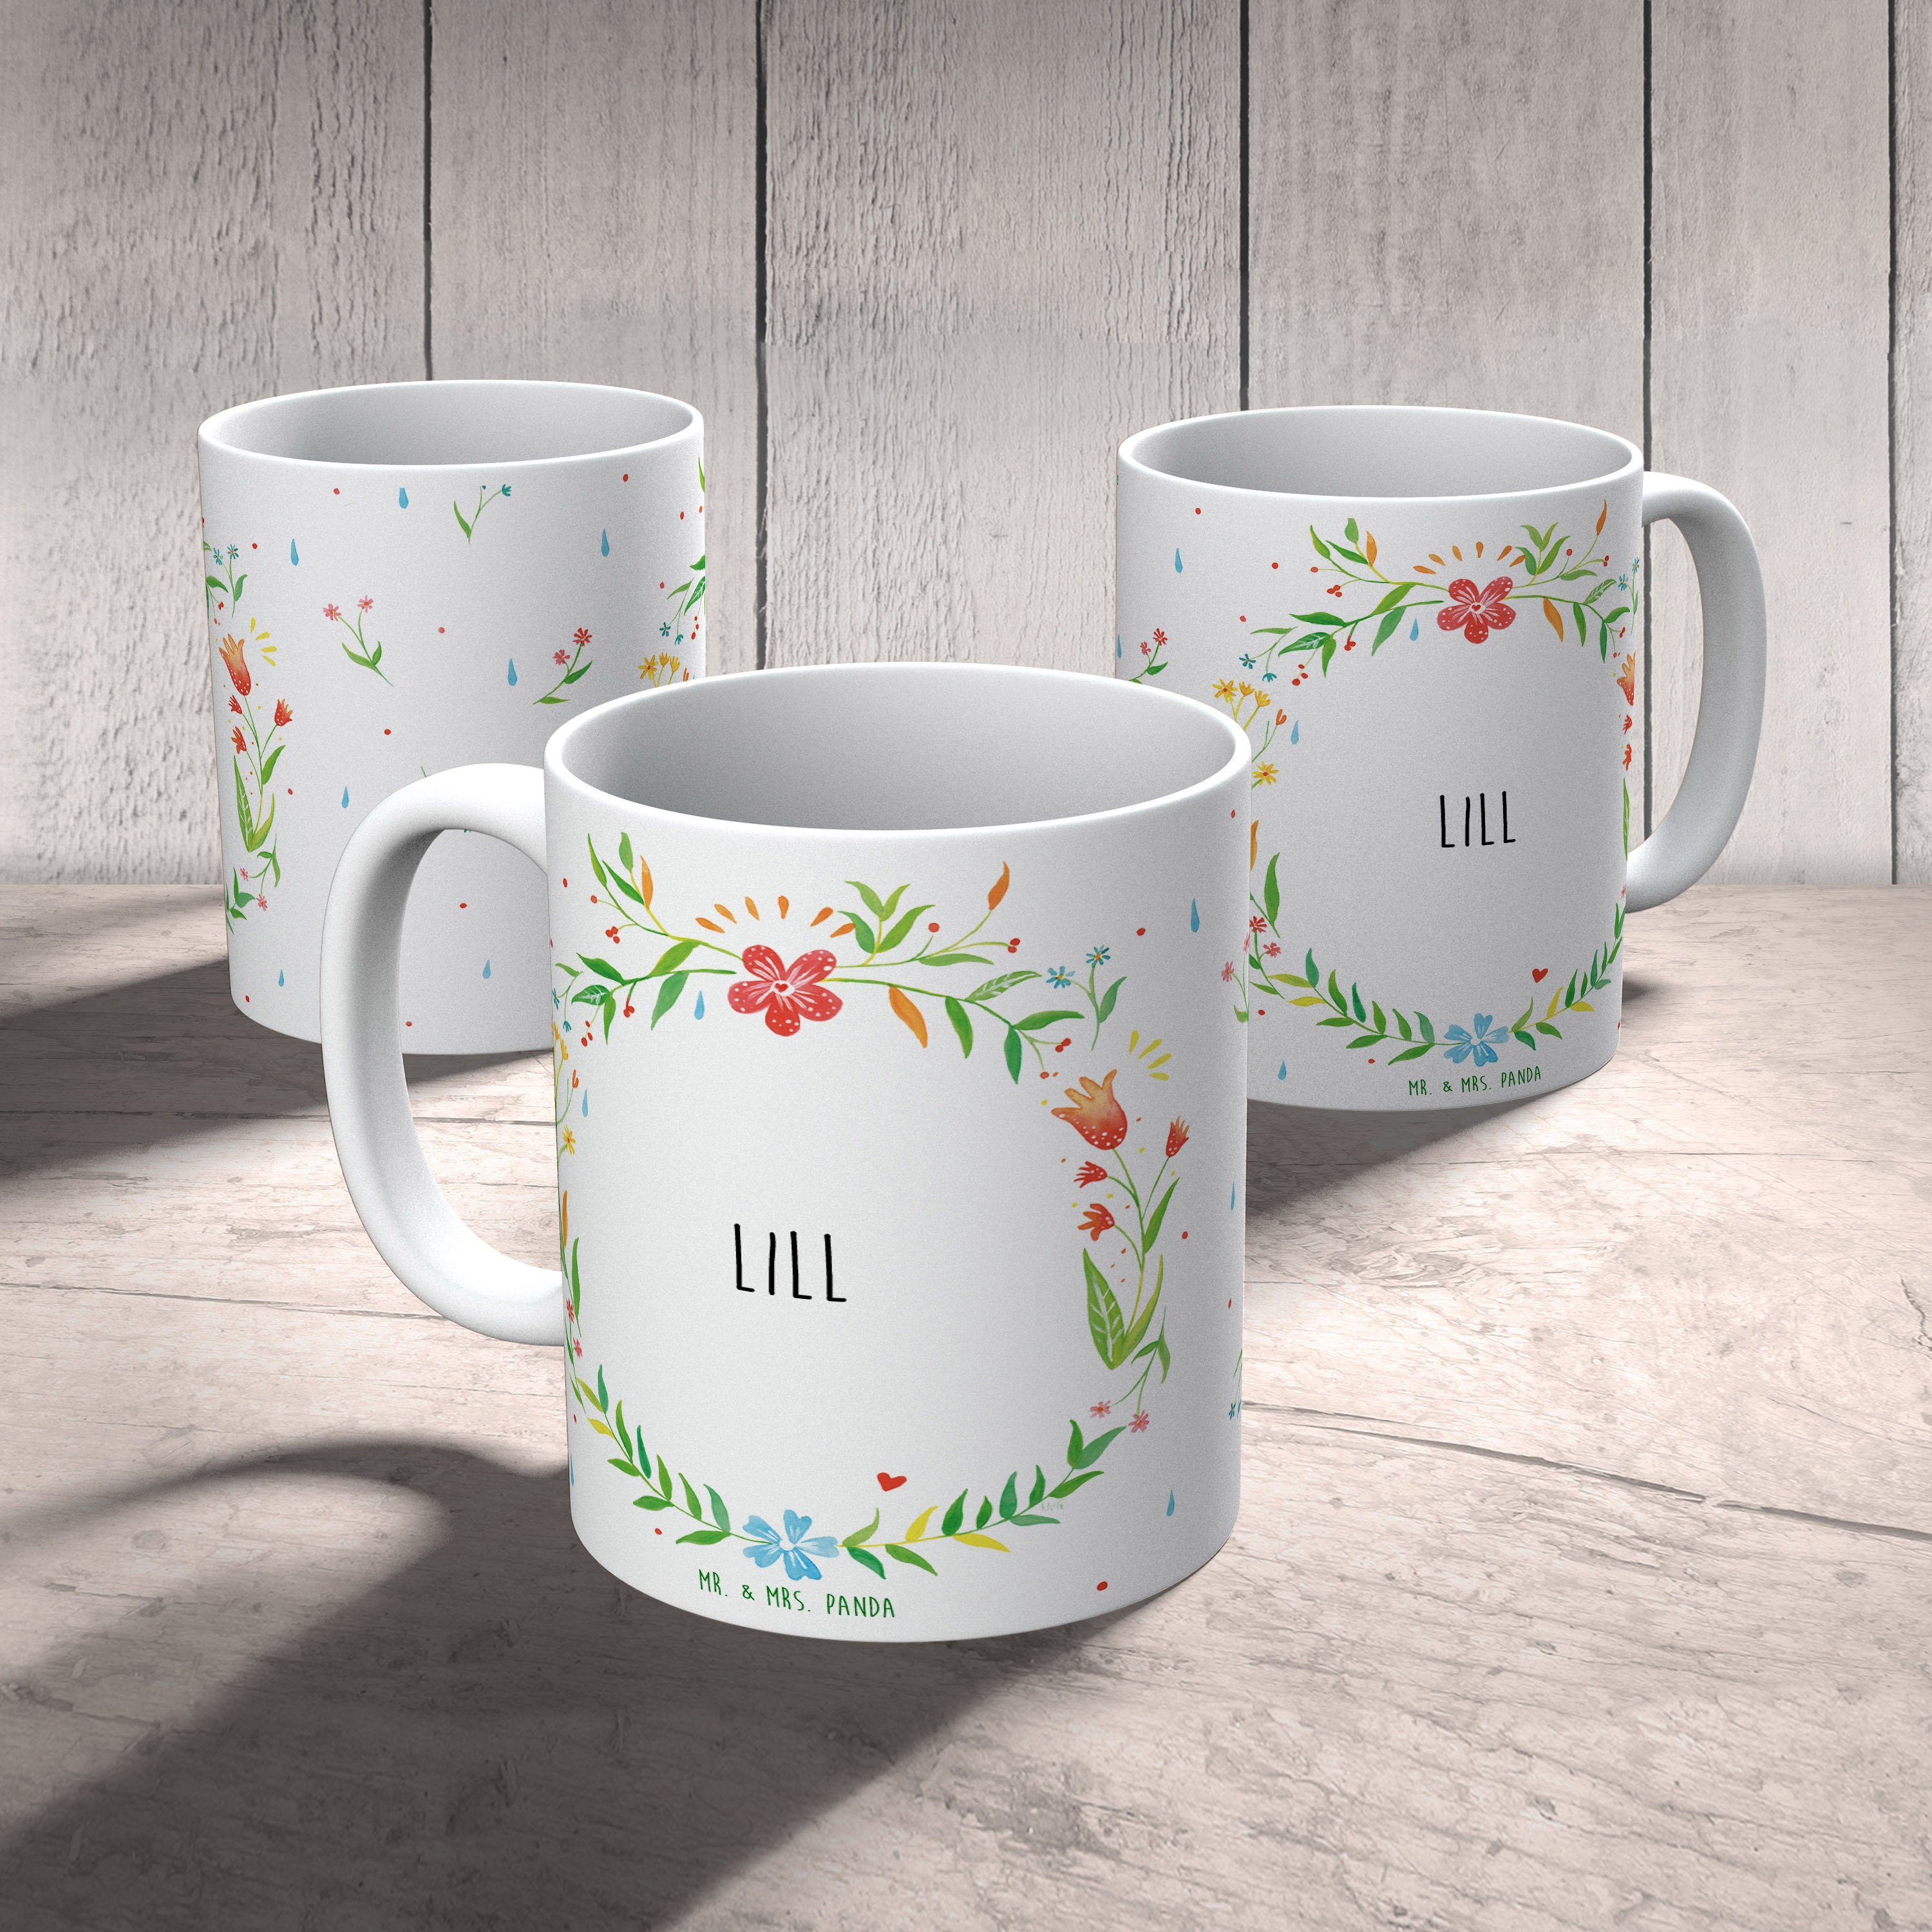 Geschenk Panda Keramik Büro Tasse Kaffeetass, Lill Keramiktasse, Geschenk, Mrs. Tasse, Mr. Tasse, & -